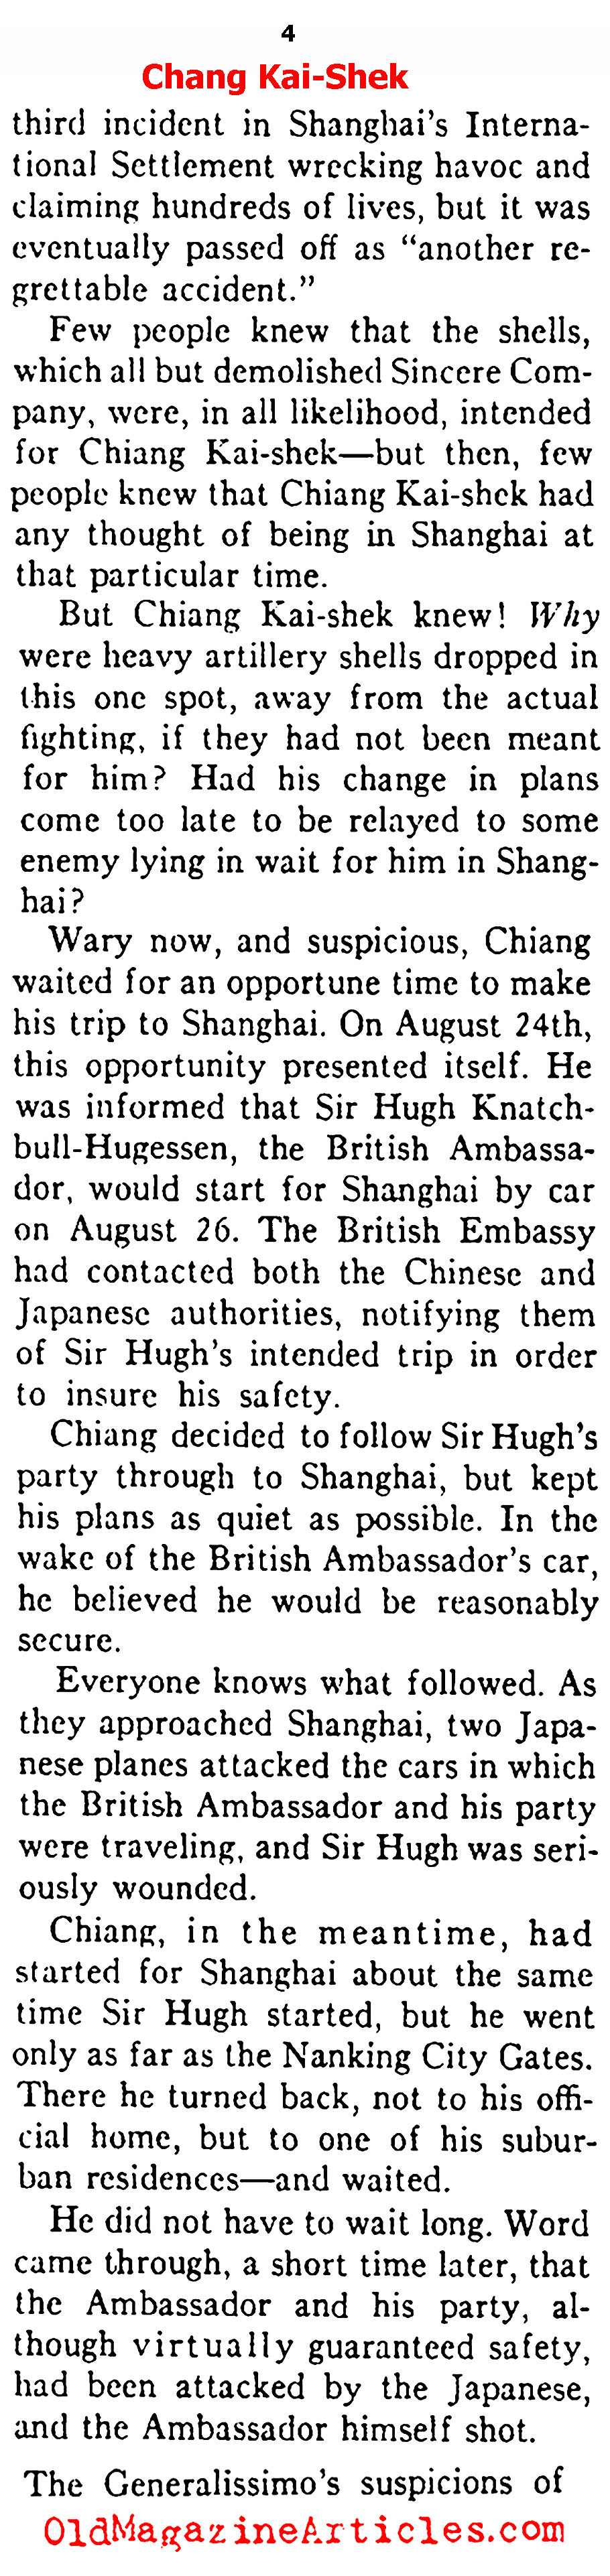 Eyes on Chiang Kai-Shek (Ken Magazine, 1938)